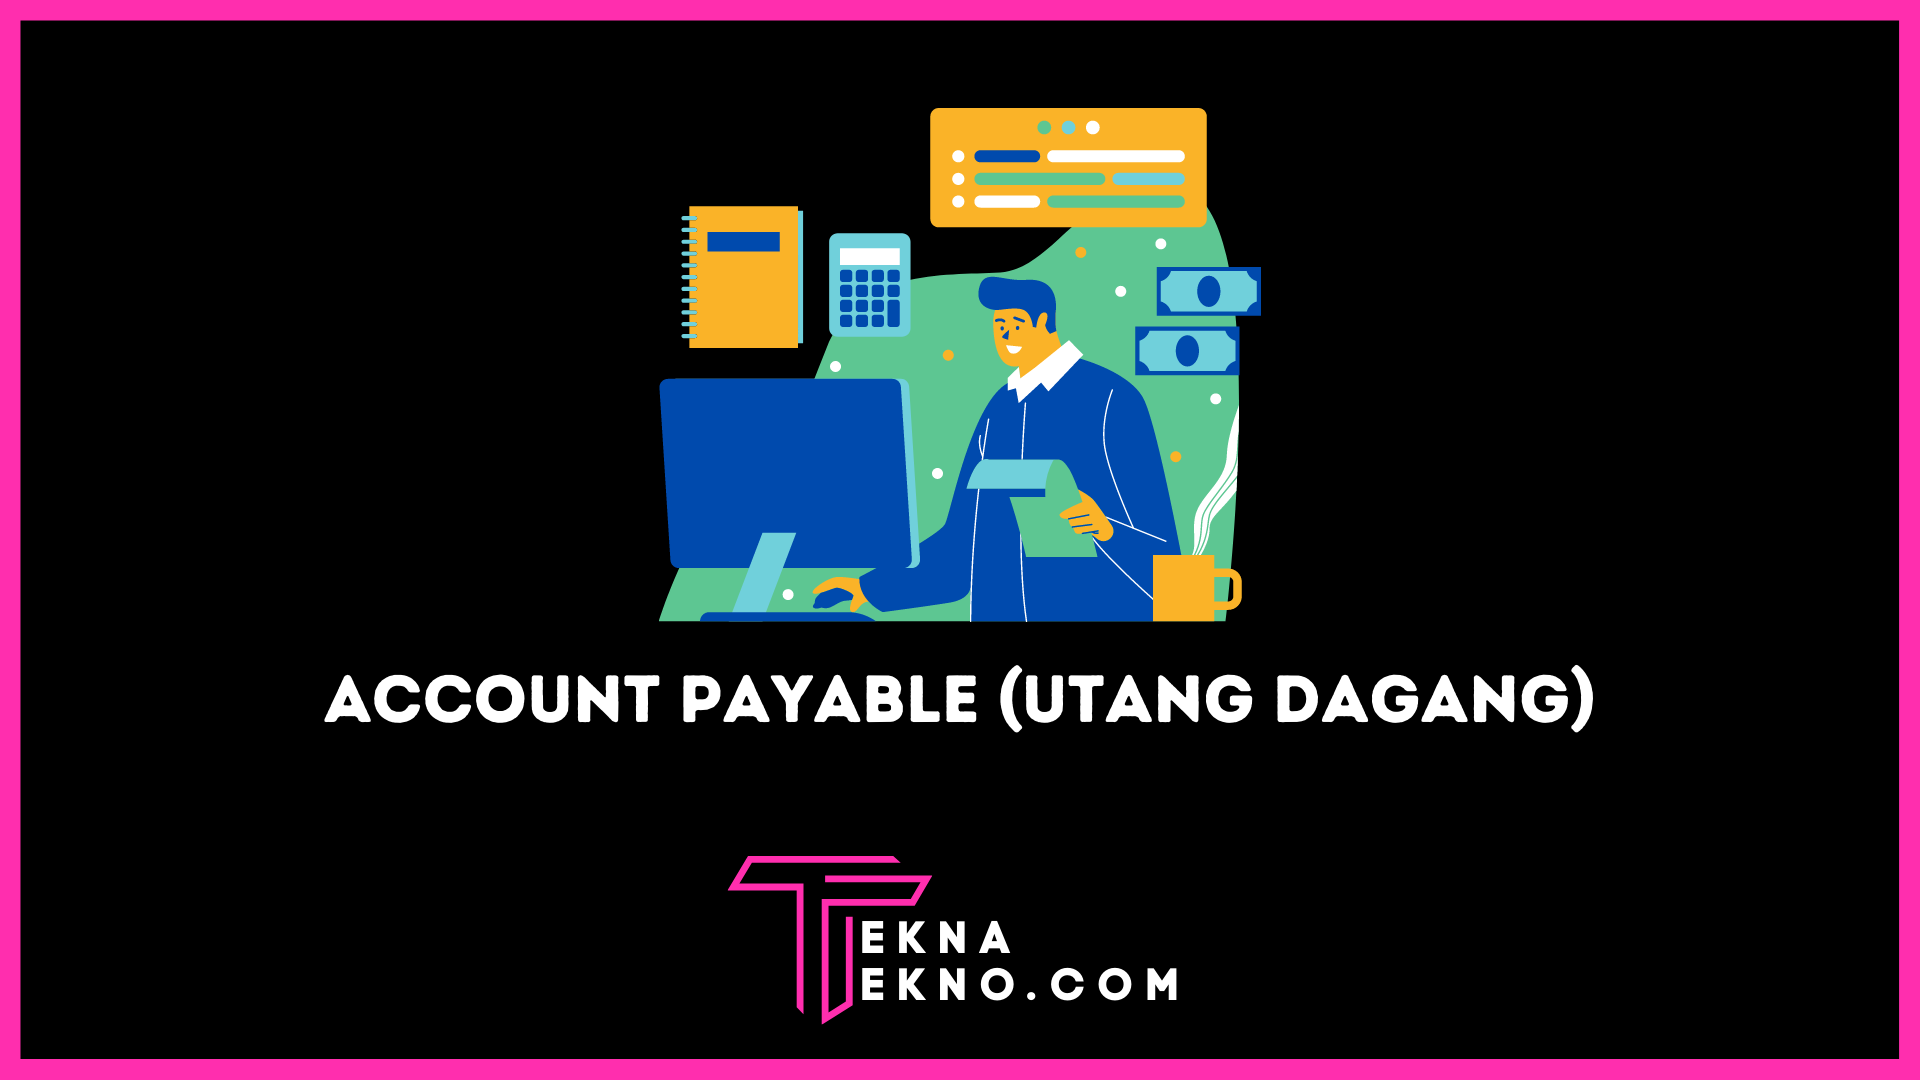 Account Payable Pengertian, Fungsi dan Proses Utang Dagang